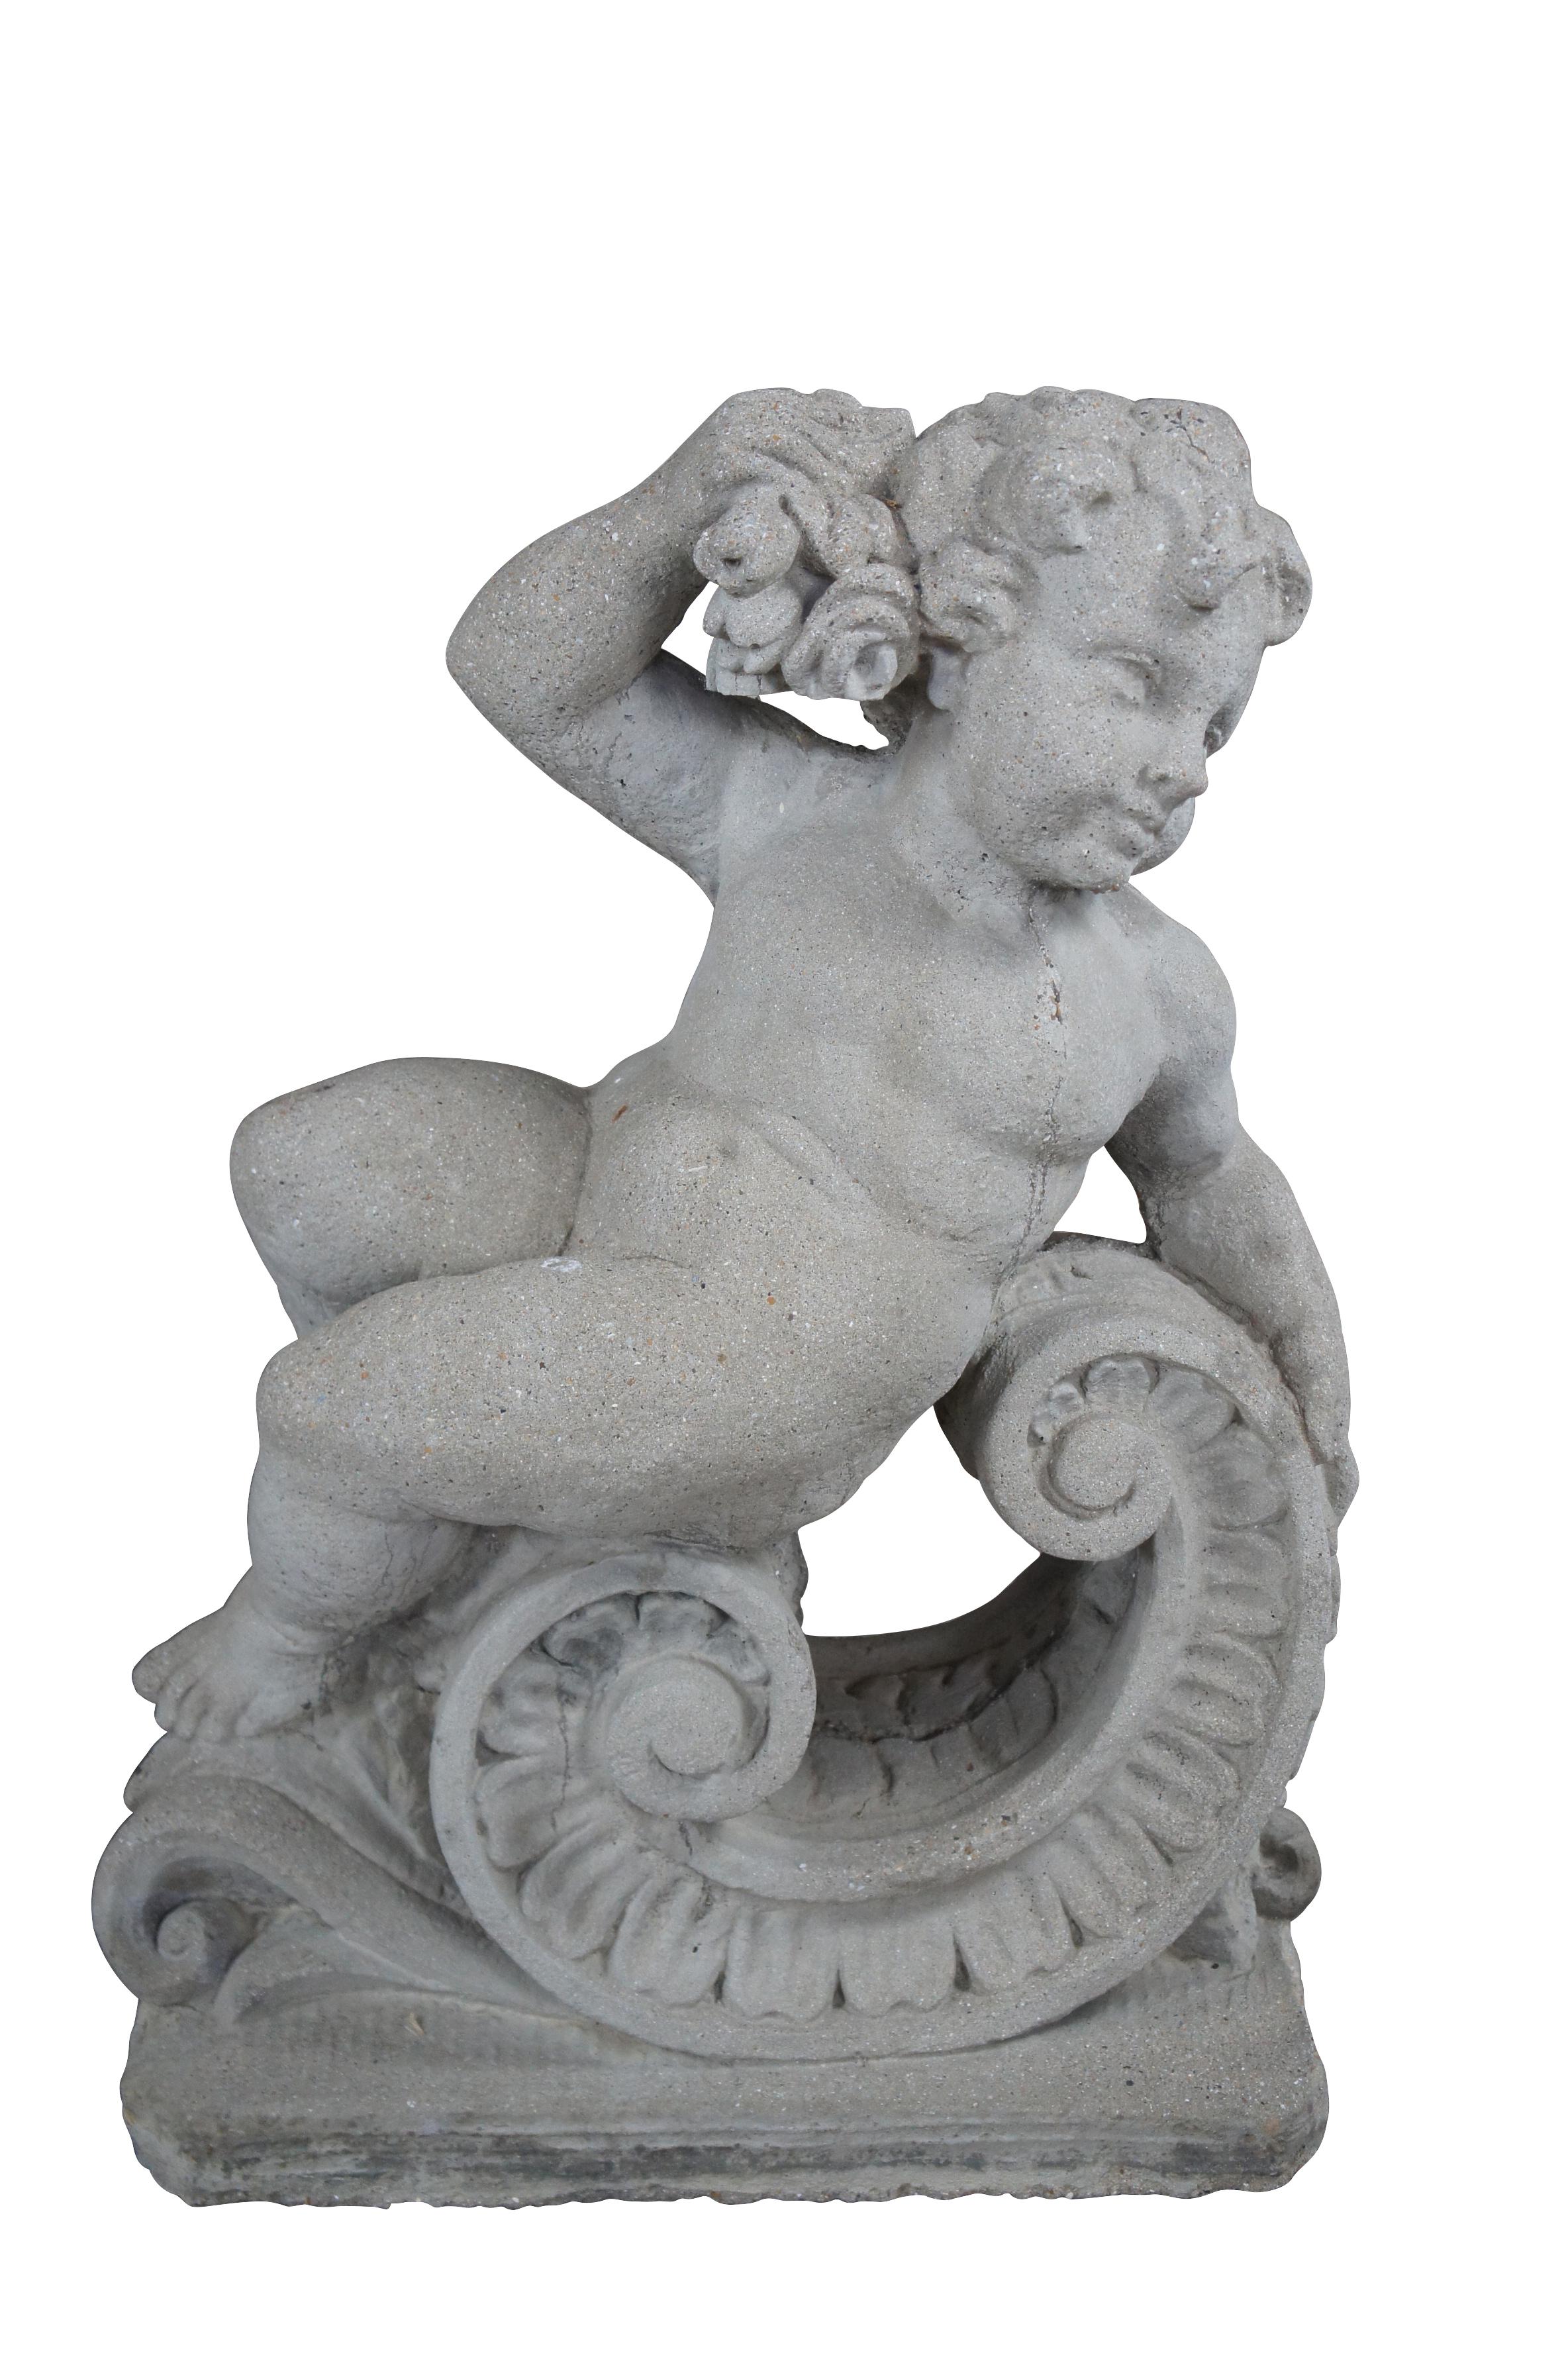 Paire de statues de putto / chérubins de style classique français représentant deux des quatre saisons.  Réalisée en béton / pierre, elle présente deux personnages allongés, l'un tourné vers la gauche avec du blé et l'autre vers la droite avec des